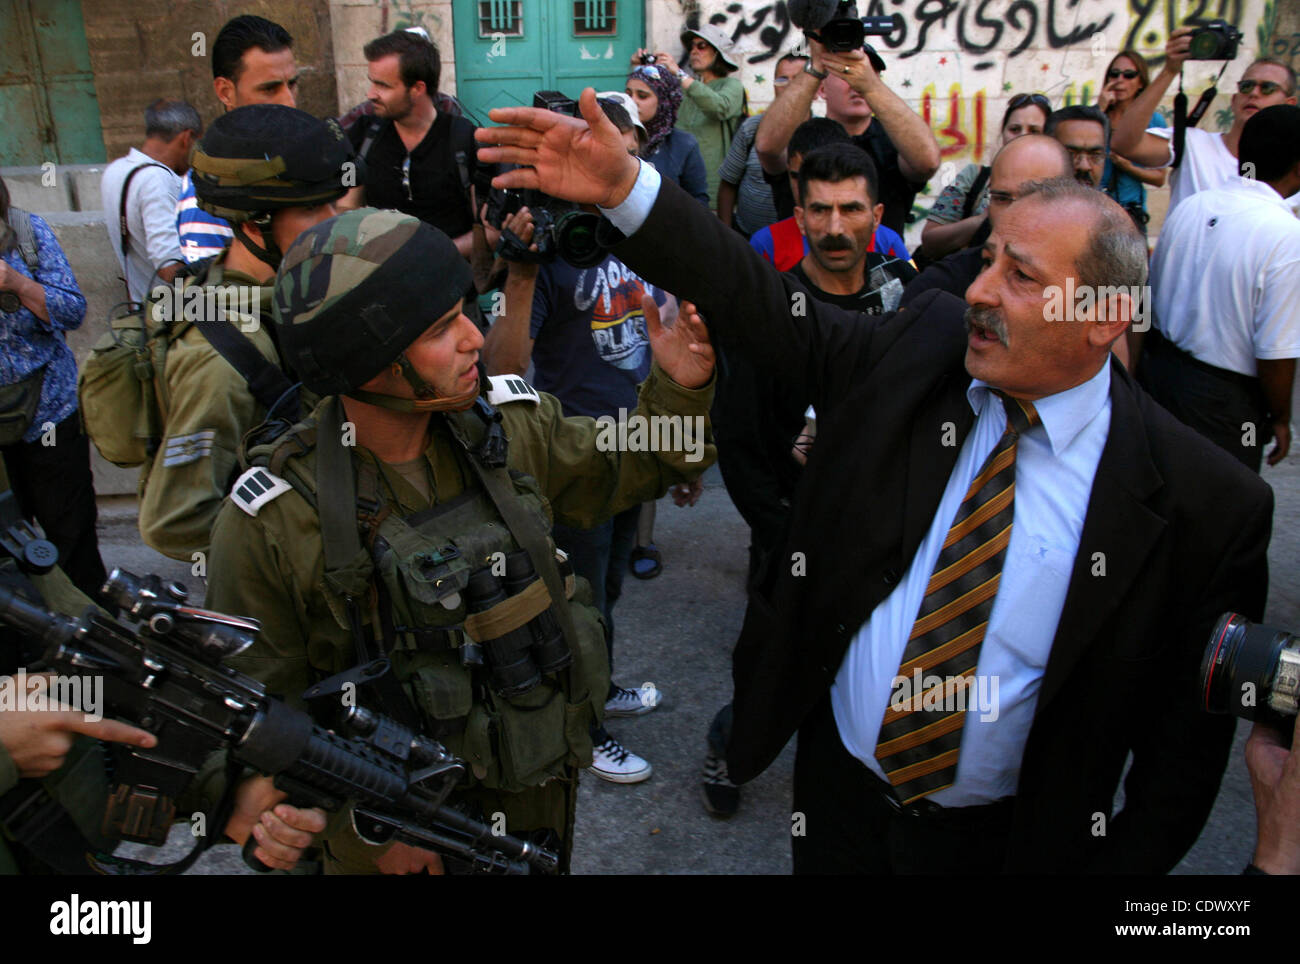 Ein palästinensischer Mann streitet mit israelischen Soldaten während einer Kundgebung gegen die Schließung der Shuhada Straße in Hebron, die Hauptschlagader, die durch einen israelischen militärischen Kontrollpunkt in der Mitte von Westjordanland Stadt von Hebron Sep 14, 2011 blockiert. Palästinenser demonstriert anspruchsvolle Bewegungsfreiheit in ihrer Stadt Stockfoto